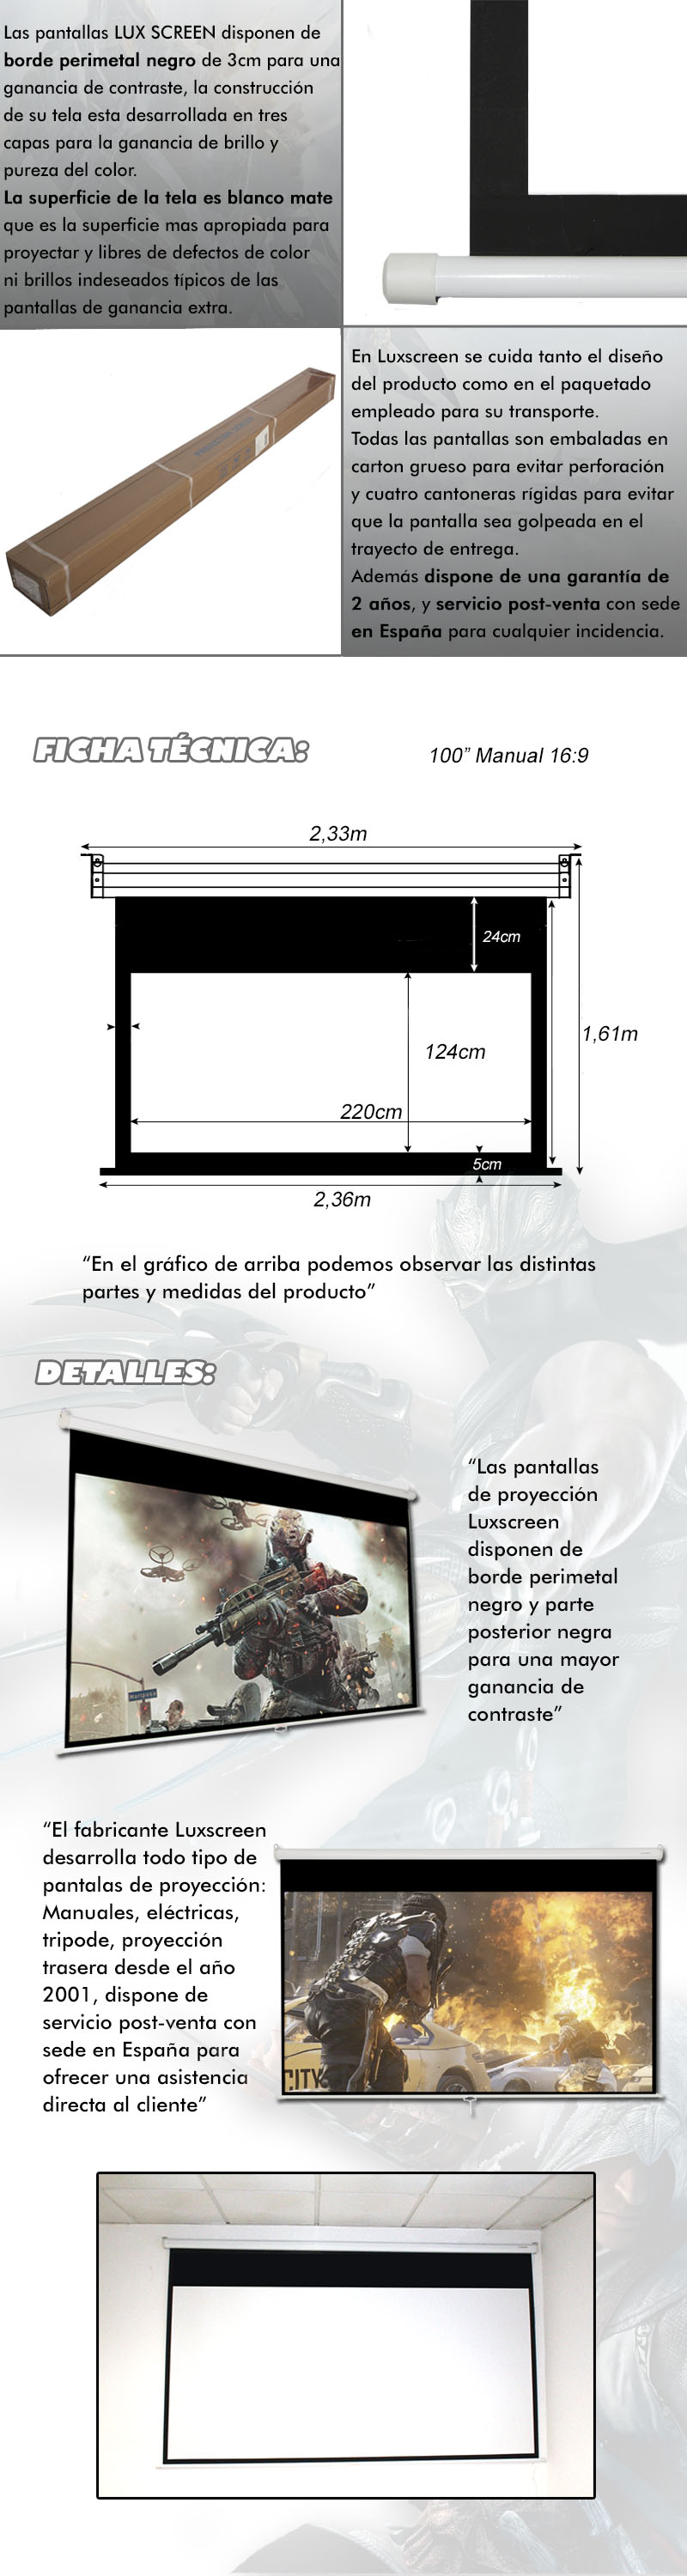 Pantalla manual para proyector de 100 16:9 ( 2,20 x 1,24 m)